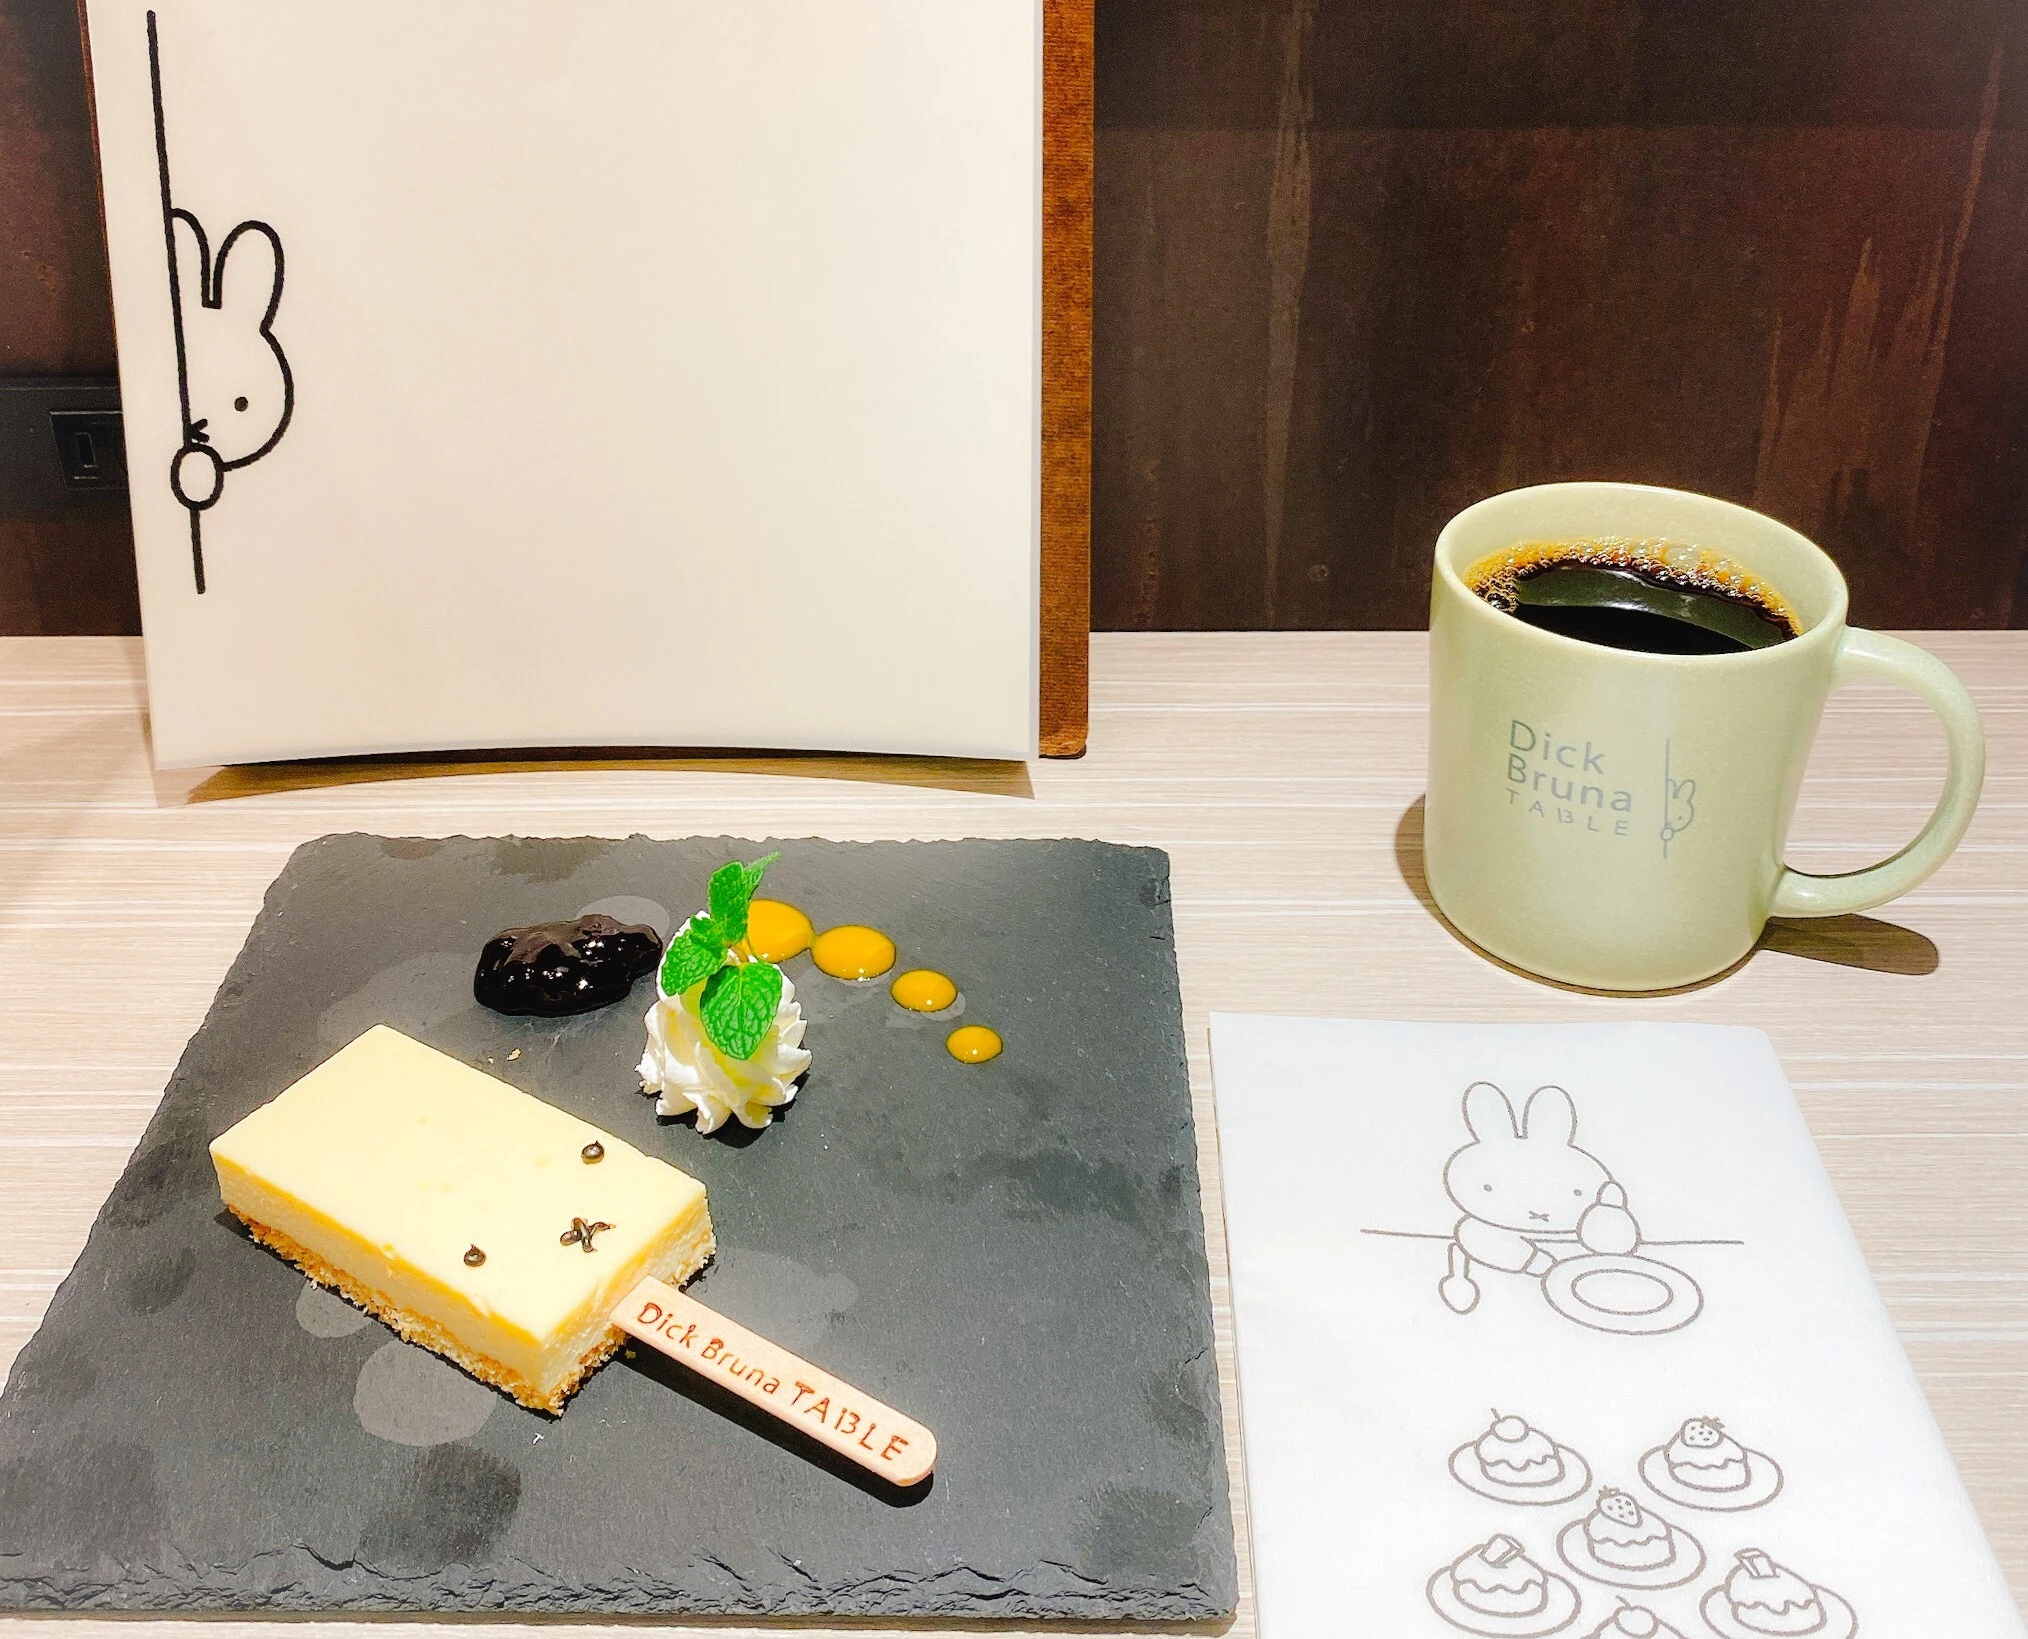  ディック・ブルーナ テーブル 横浜でいただいた「ミッフィーチーズケーキバー」。食器もかわいい。